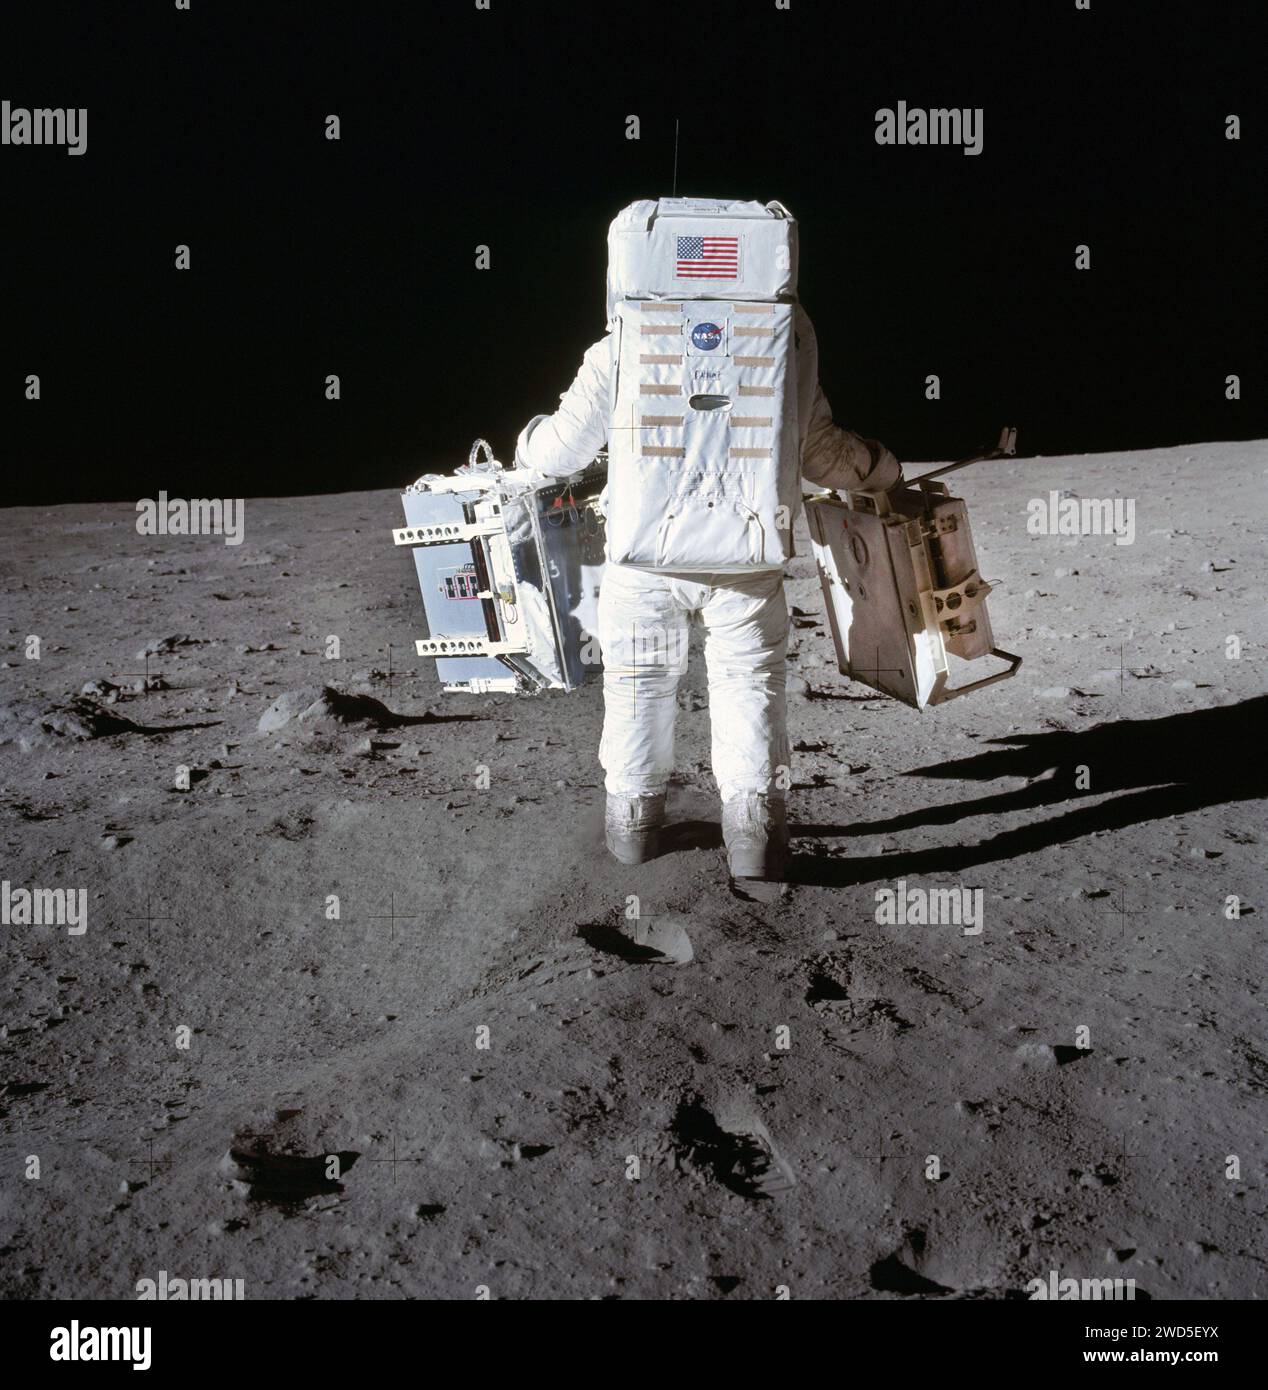 L'astronauta americano Edwin E. Aldrin Jr., pilota modulo lunare, in movimento verso la posizione per dispiegare due componenti del pacchetto Early Apollo Scientific Experiments (EASEP) sulla superficie lunare durante l'attività extraveicolare Apollo 11, Johnson Space Center, NASA, 20 luglio 1969 Foto Stock